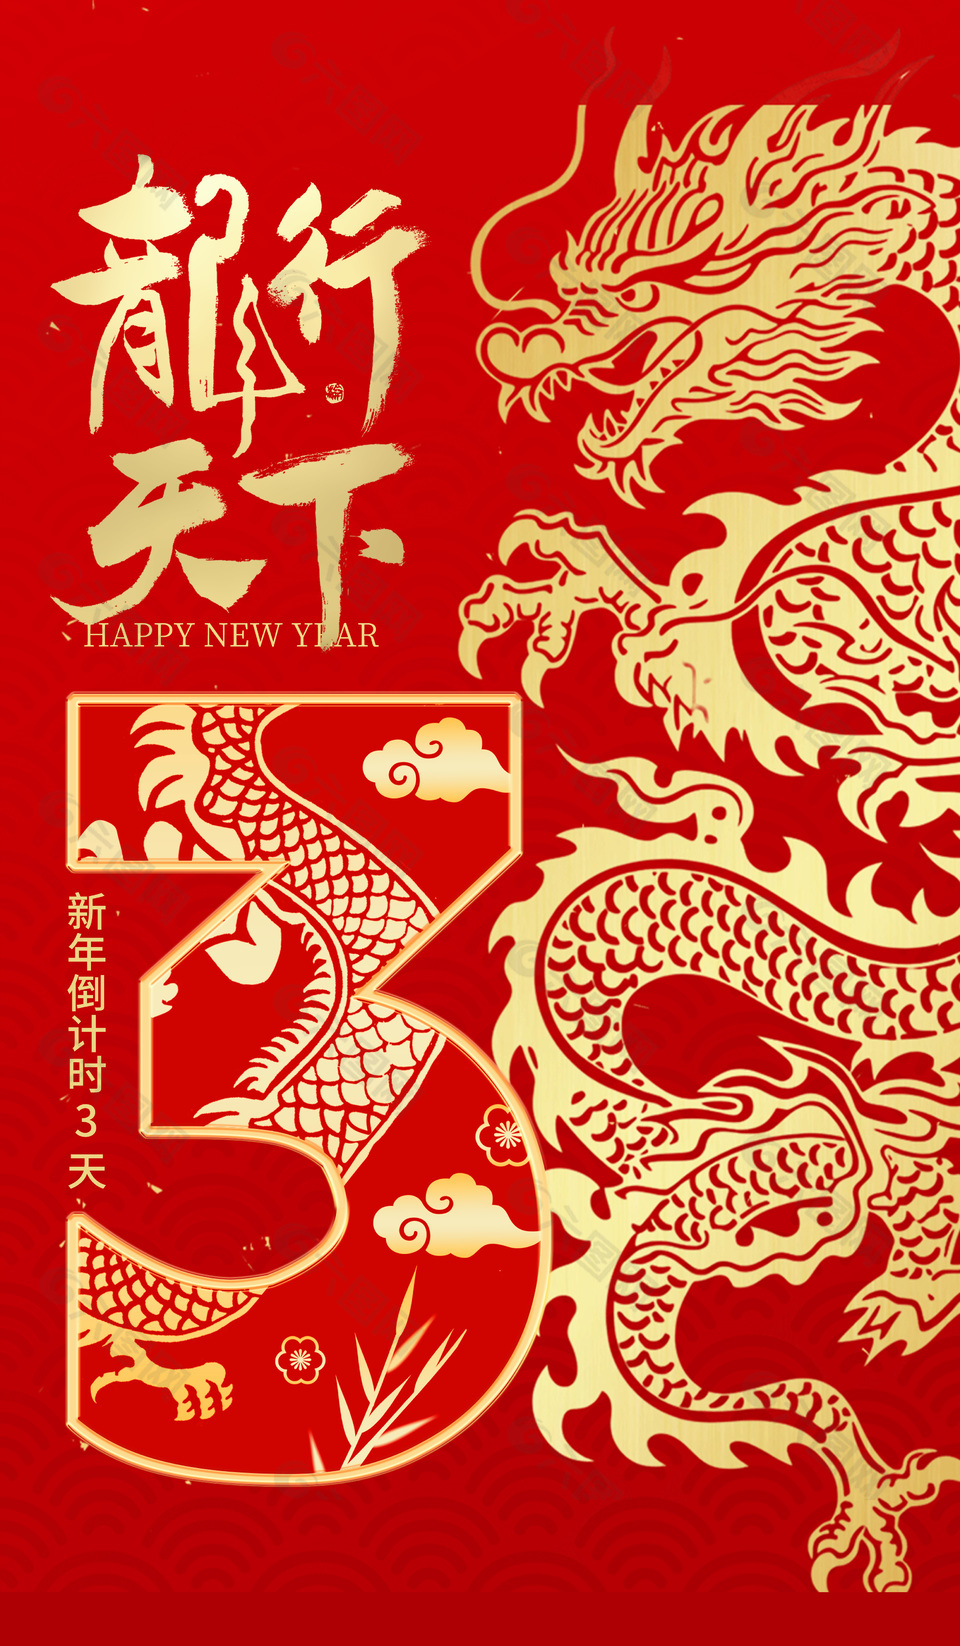 龙行天下新年倒计时3天红色中国风海报设计